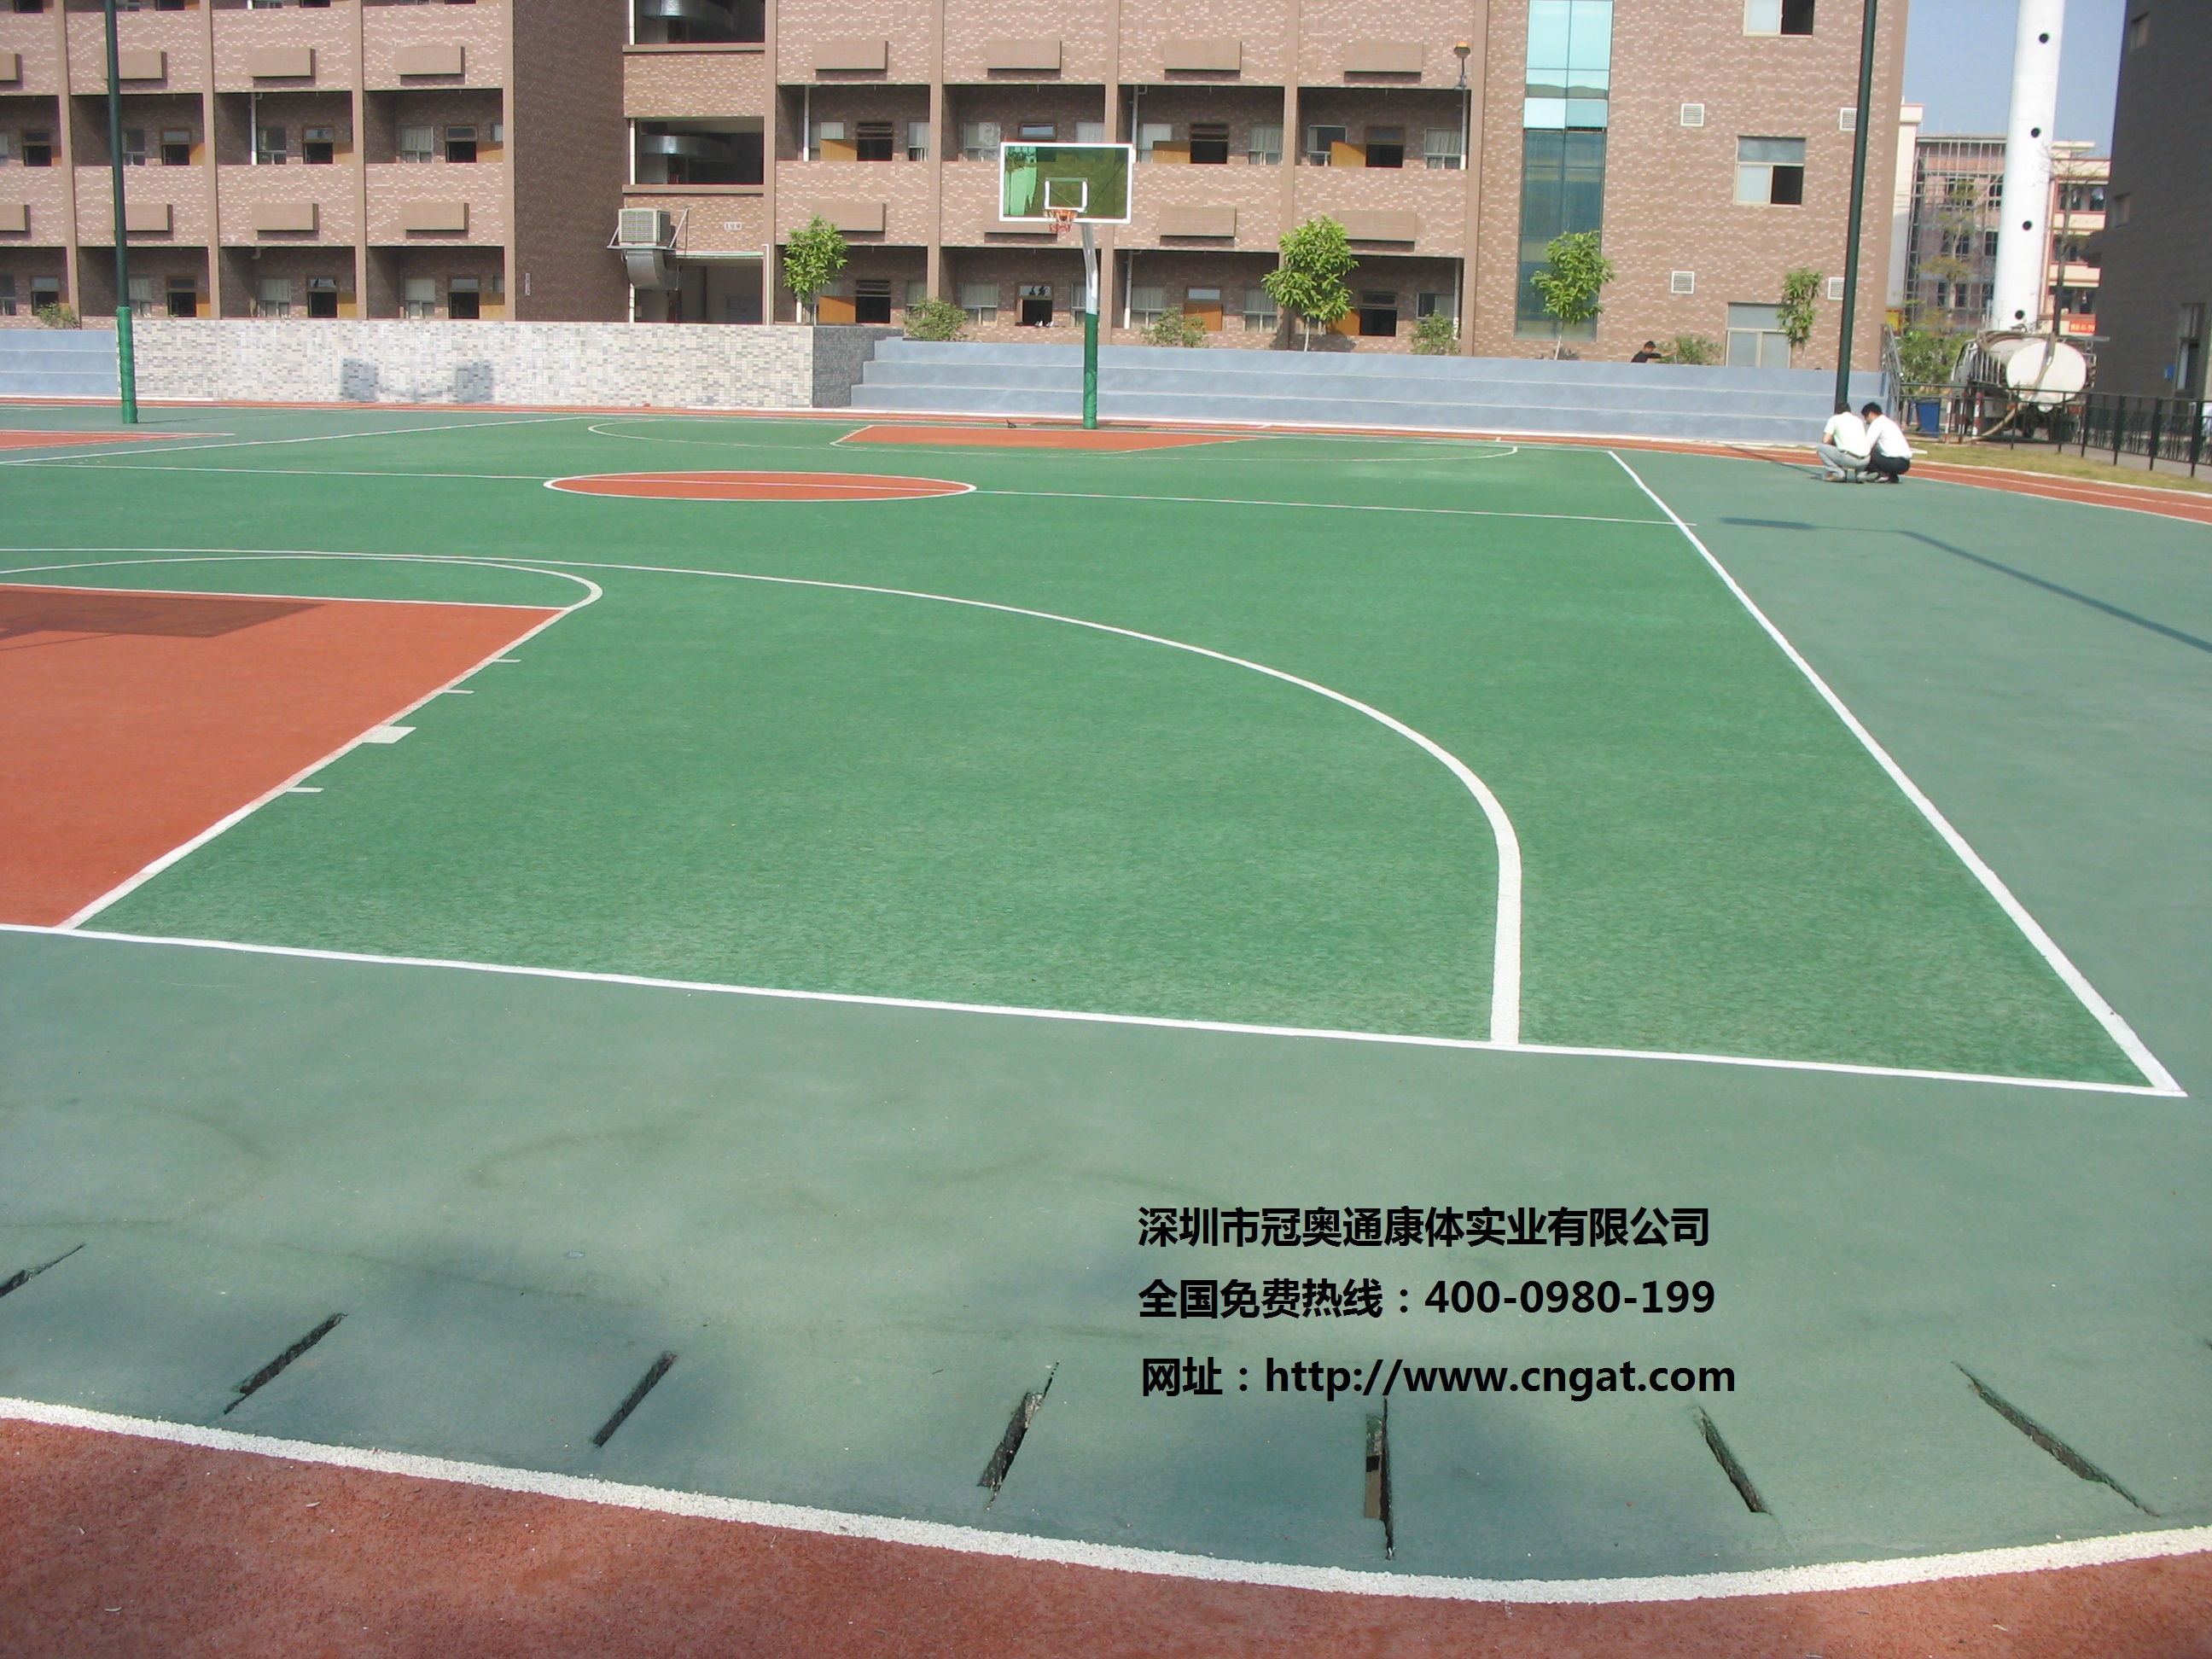 丙烯酸材料做为篮球场地的性能优势